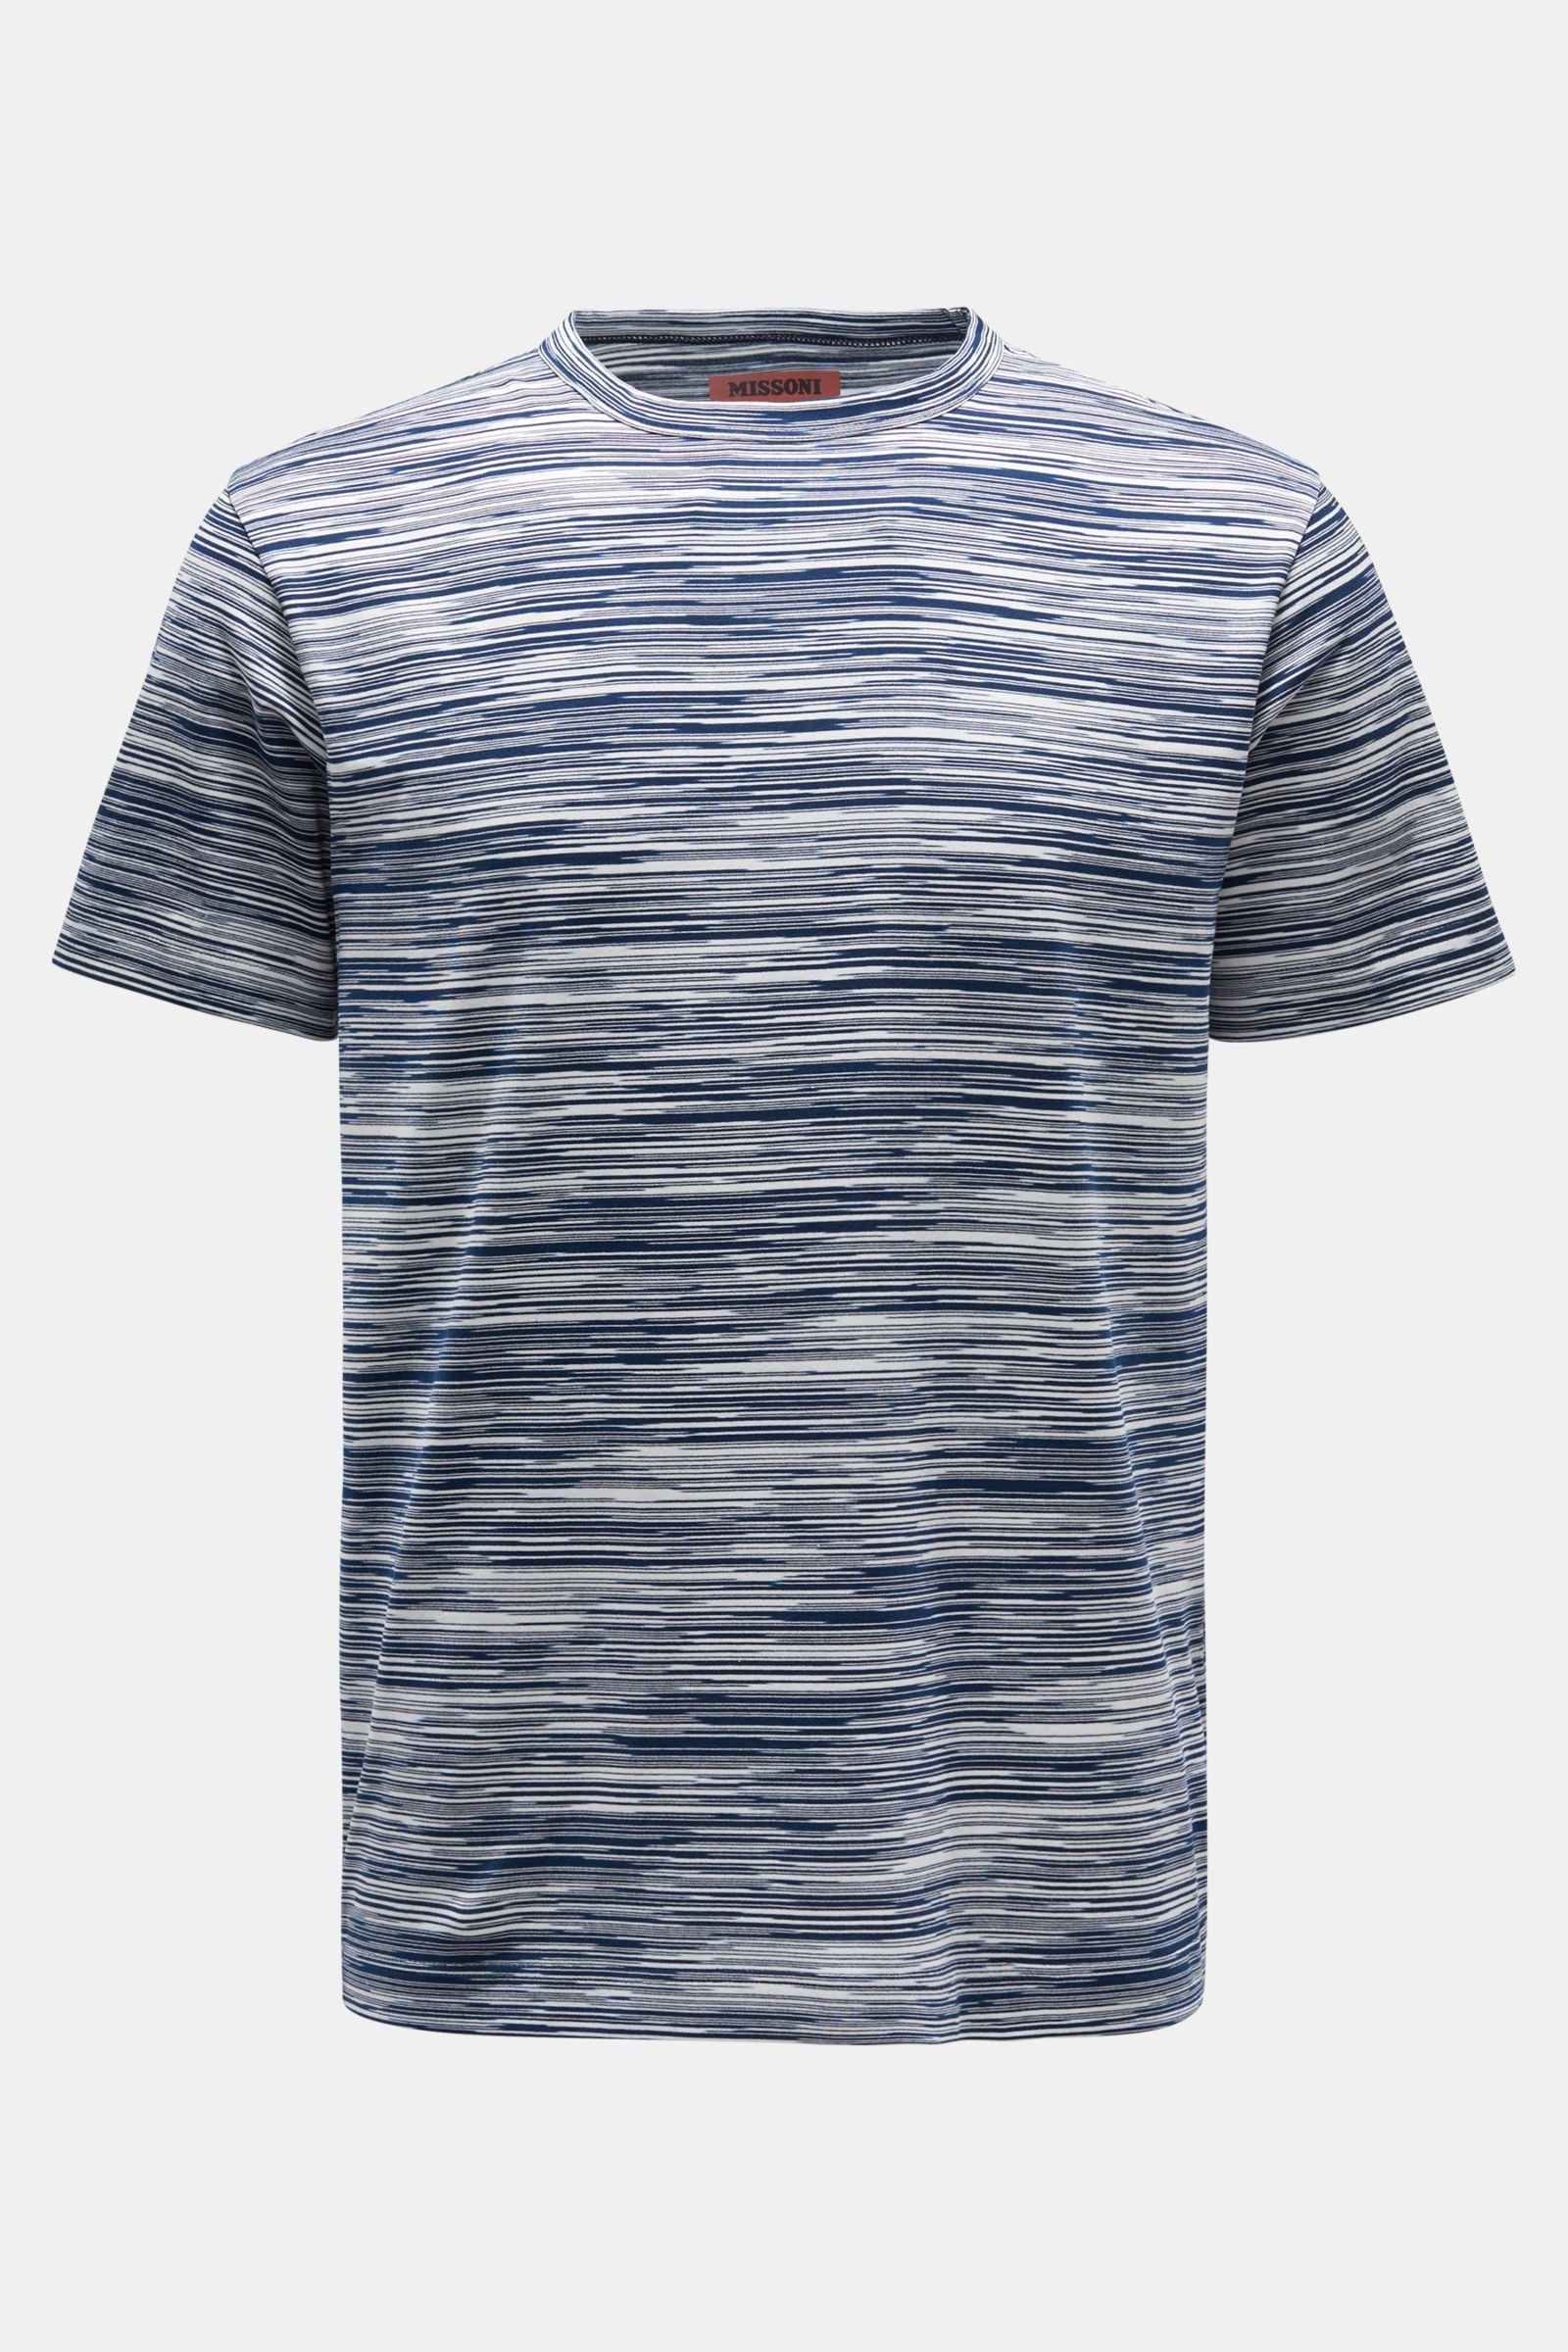 Rundhals-T-Shirt navy/weiß gestreift